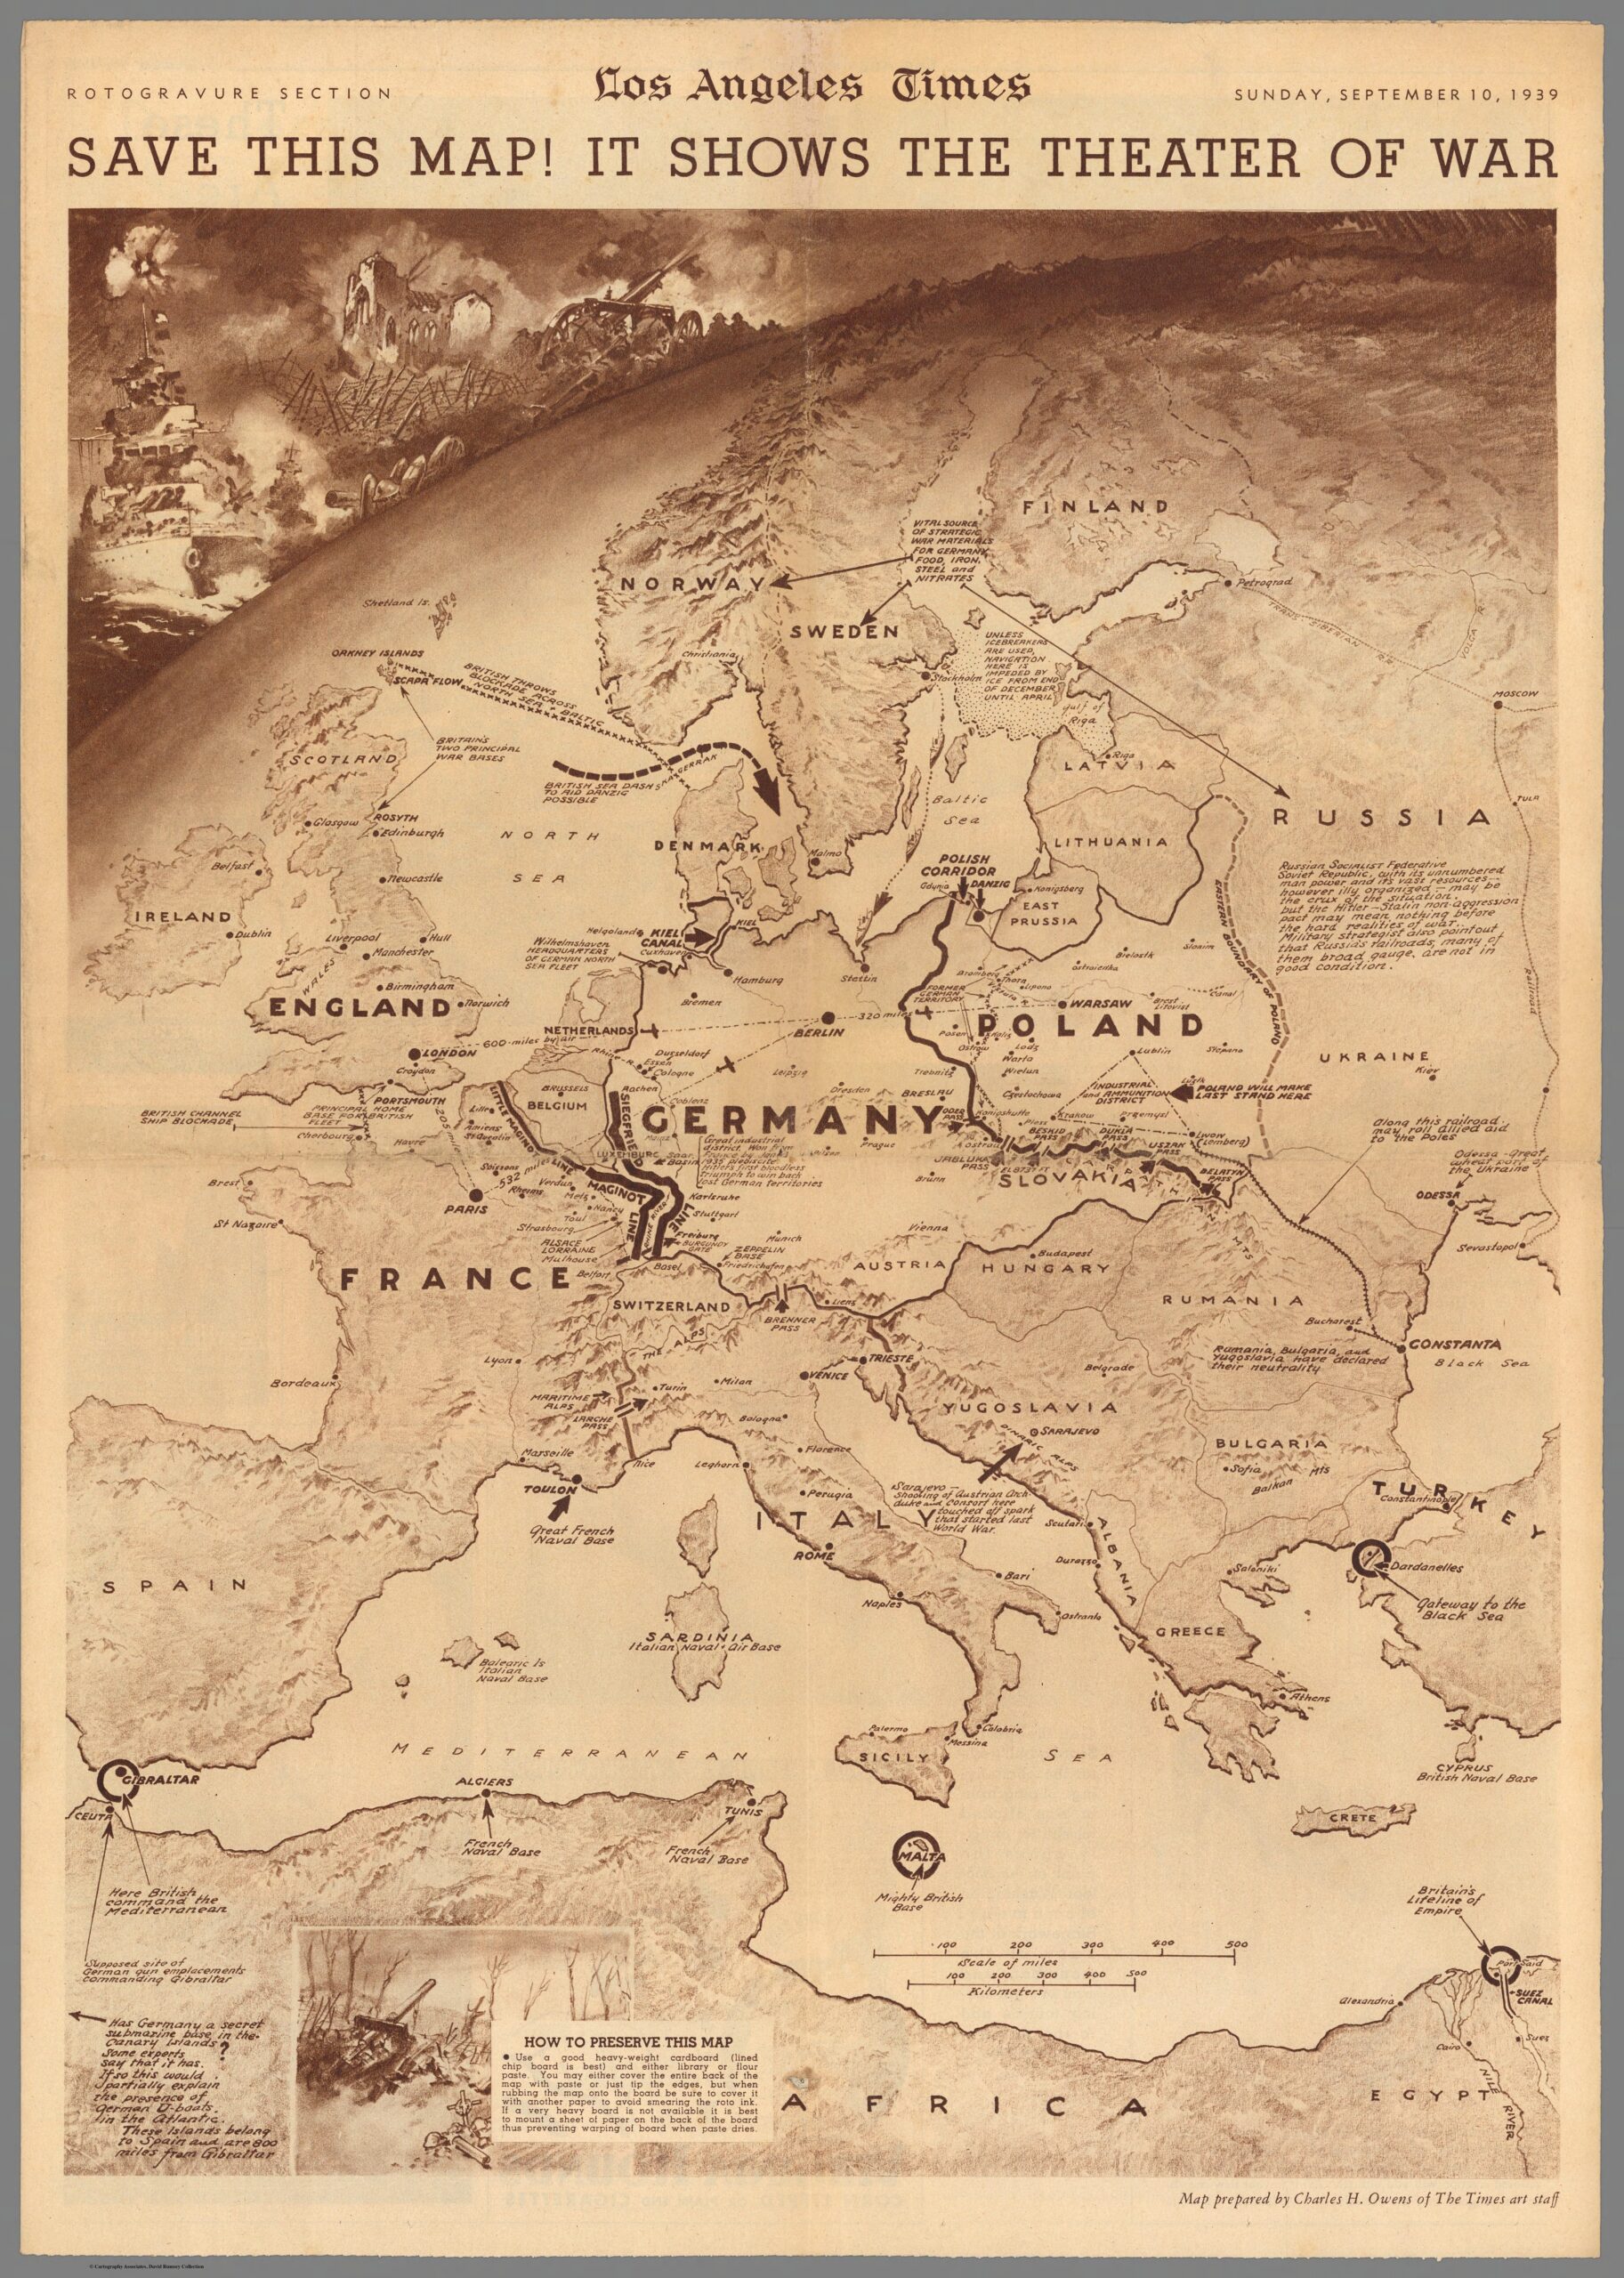 ¡Guarda este mapa! Muestra el teatro de la guerra (1939)